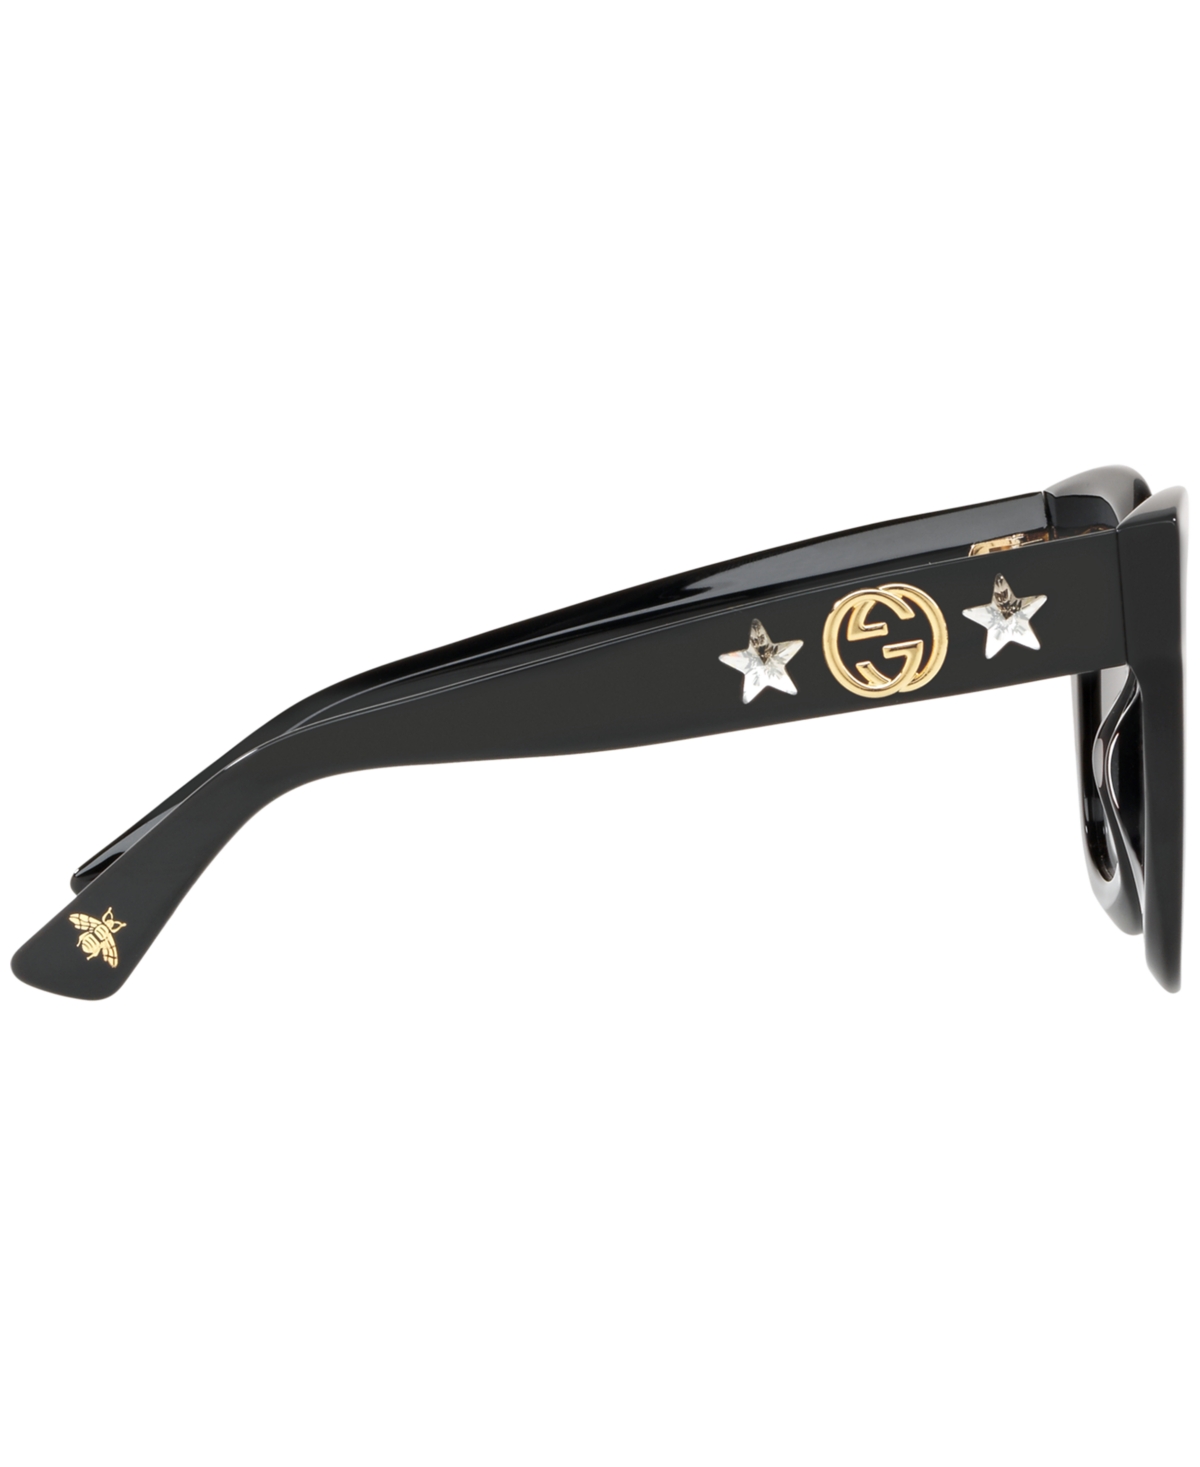 Shop Gucci Sunglasses, Gg0208s In Gray Gradient,black